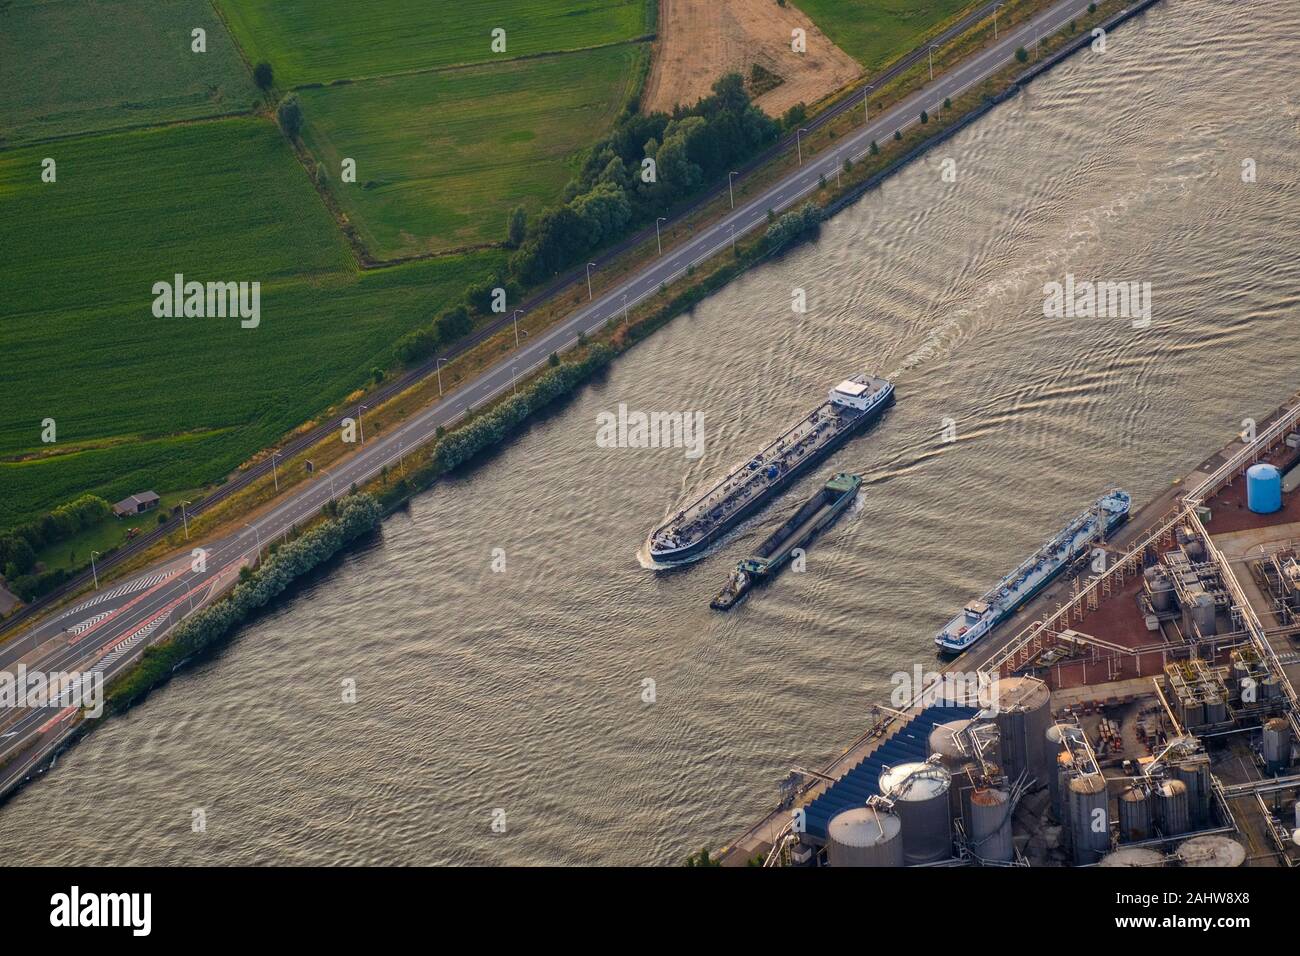 Deux bateaux se croisent sur l'important canal de Gand-Terneuzen. À droite se trouve un tissu de produits chimiques industriels, l'une des industries de la région. Banque D'Images